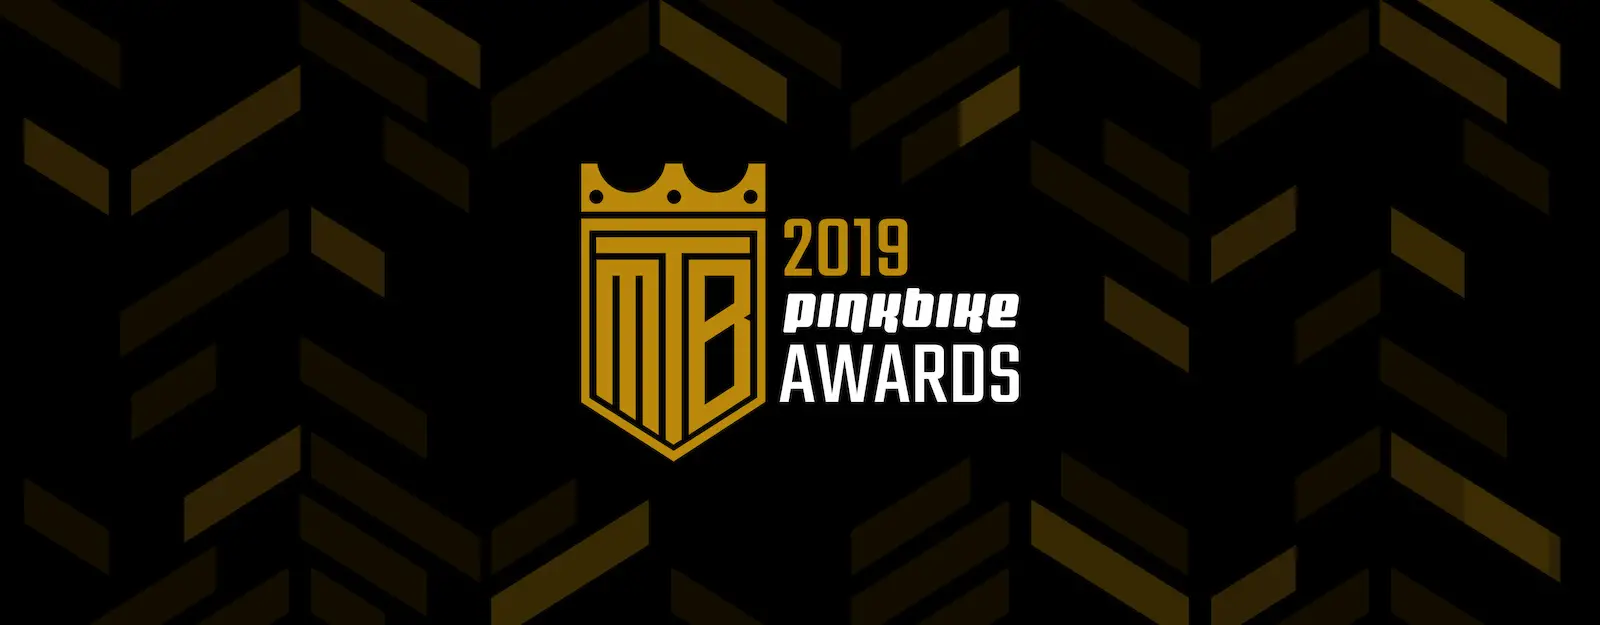 Rowerowe zdjęcie 2019 roku wybrane | Pinkbike Awards